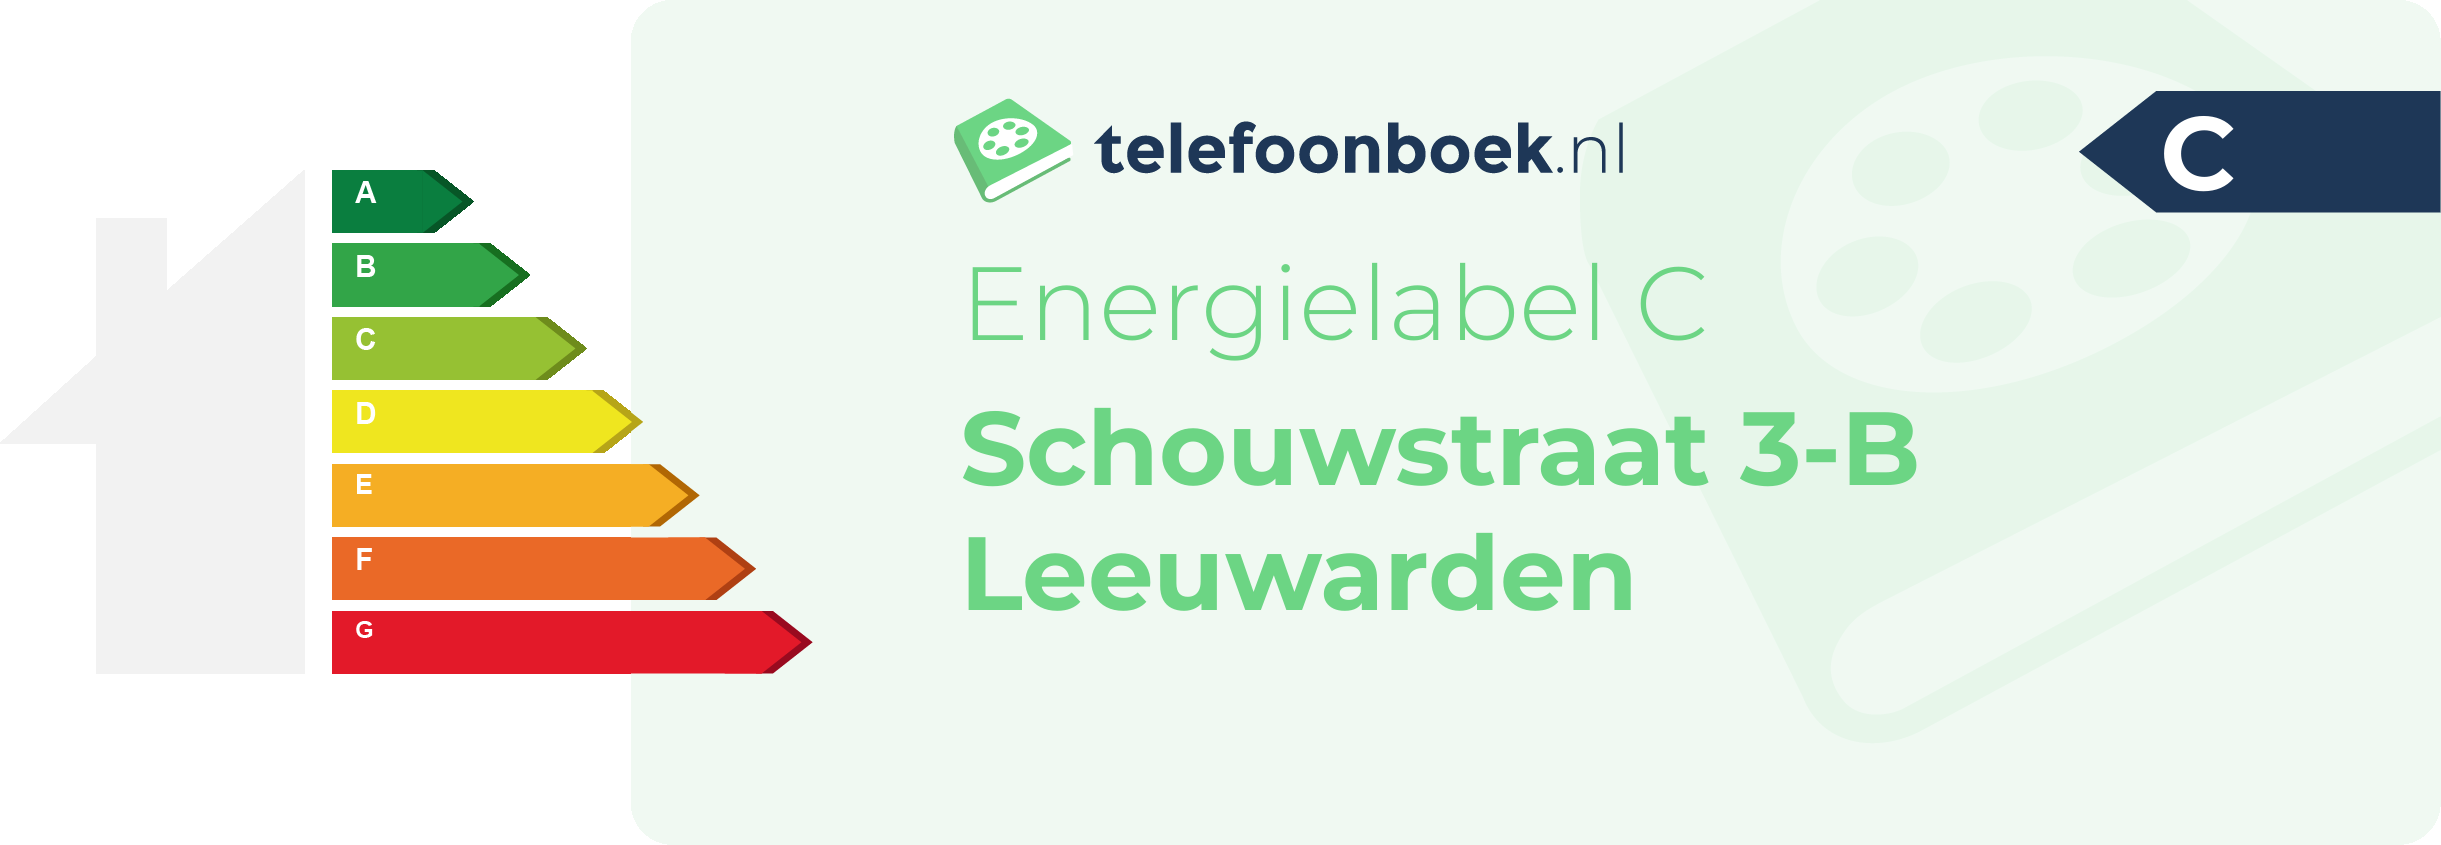 Energielabel Schouwstraat 3-B Leeuwarden